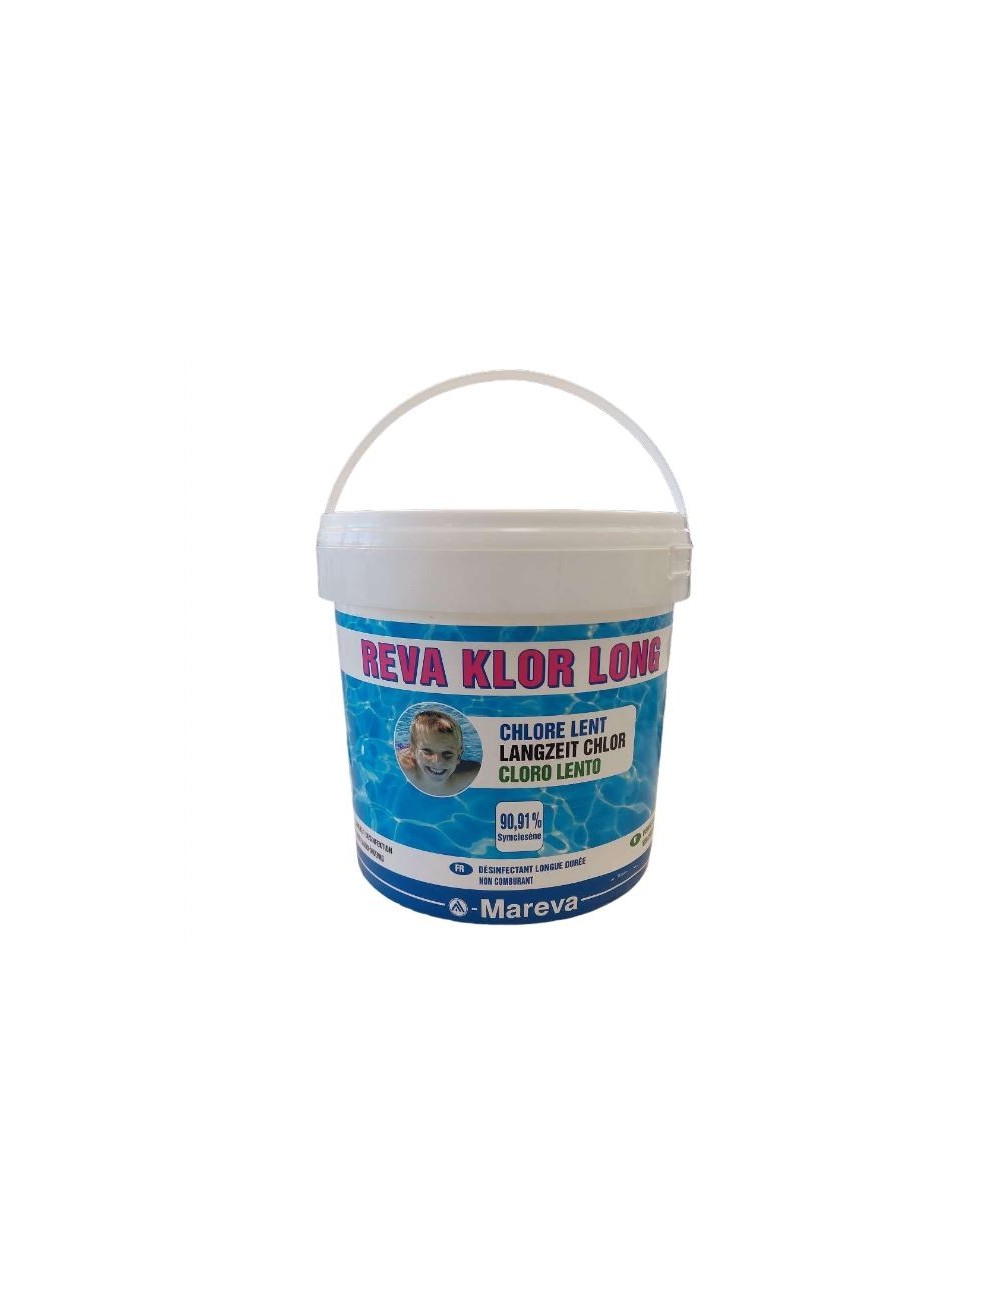 Cloro in Pastiglie 5 kg - Mareva Reva Klor Long - Cloro in pastiglie ad azione disinfettante e chiarificante